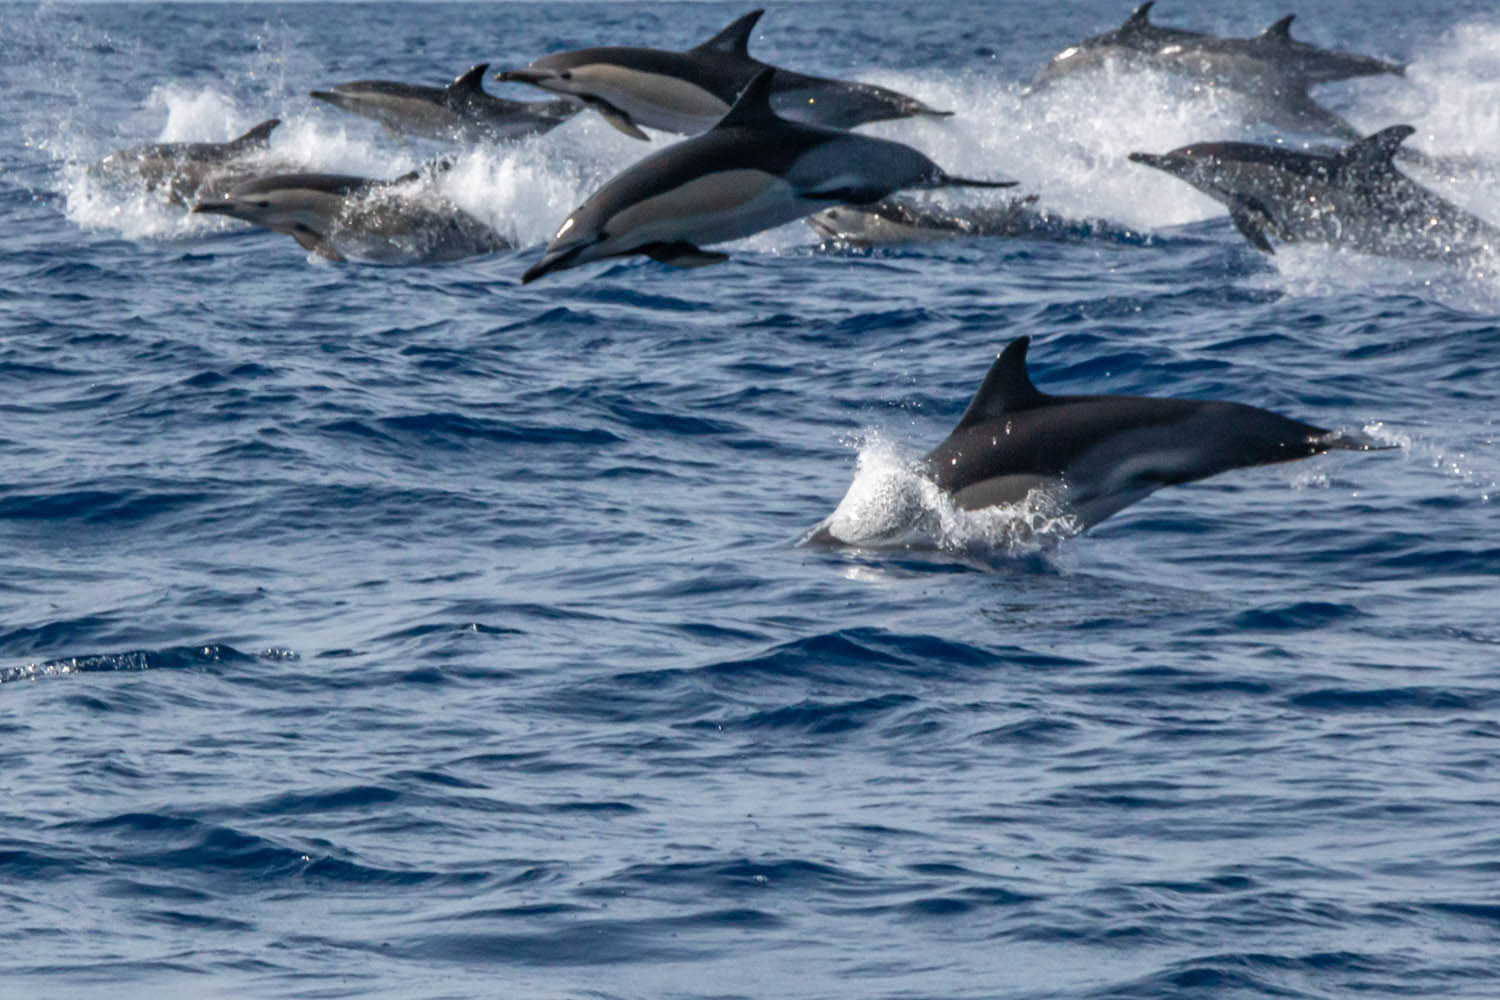 voyage naturaliste les cetaces et oiseaux marins des acores 20